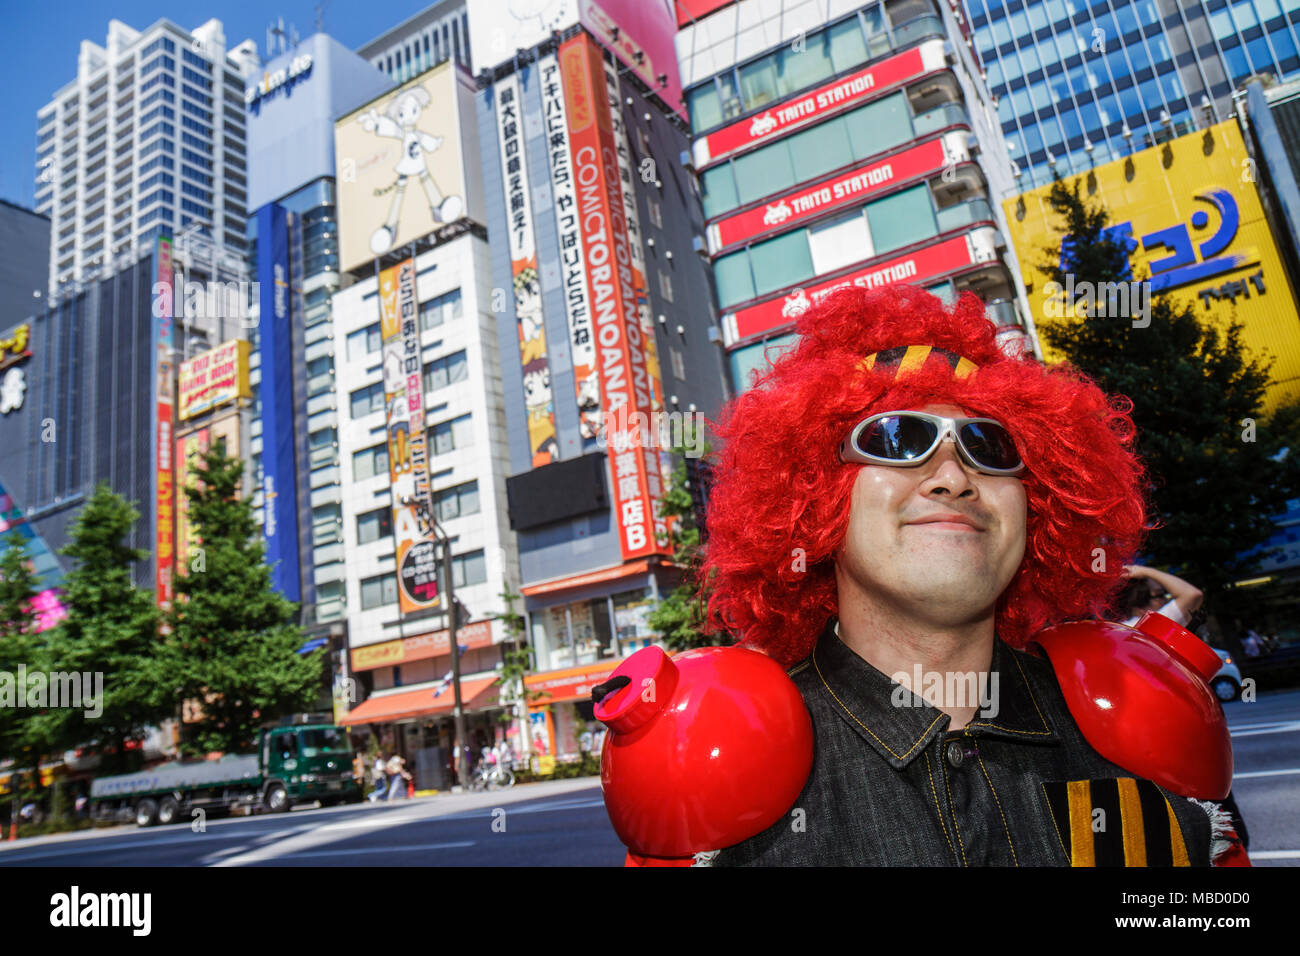 Tokyo Japon,Akihabara,Electric Town,Chuo Dori Street,kanji,japonais anglais,asiatique Oriental,homme hommes adultes,cosplay,jeu de costume,tenue,rouge W Banque D'Images